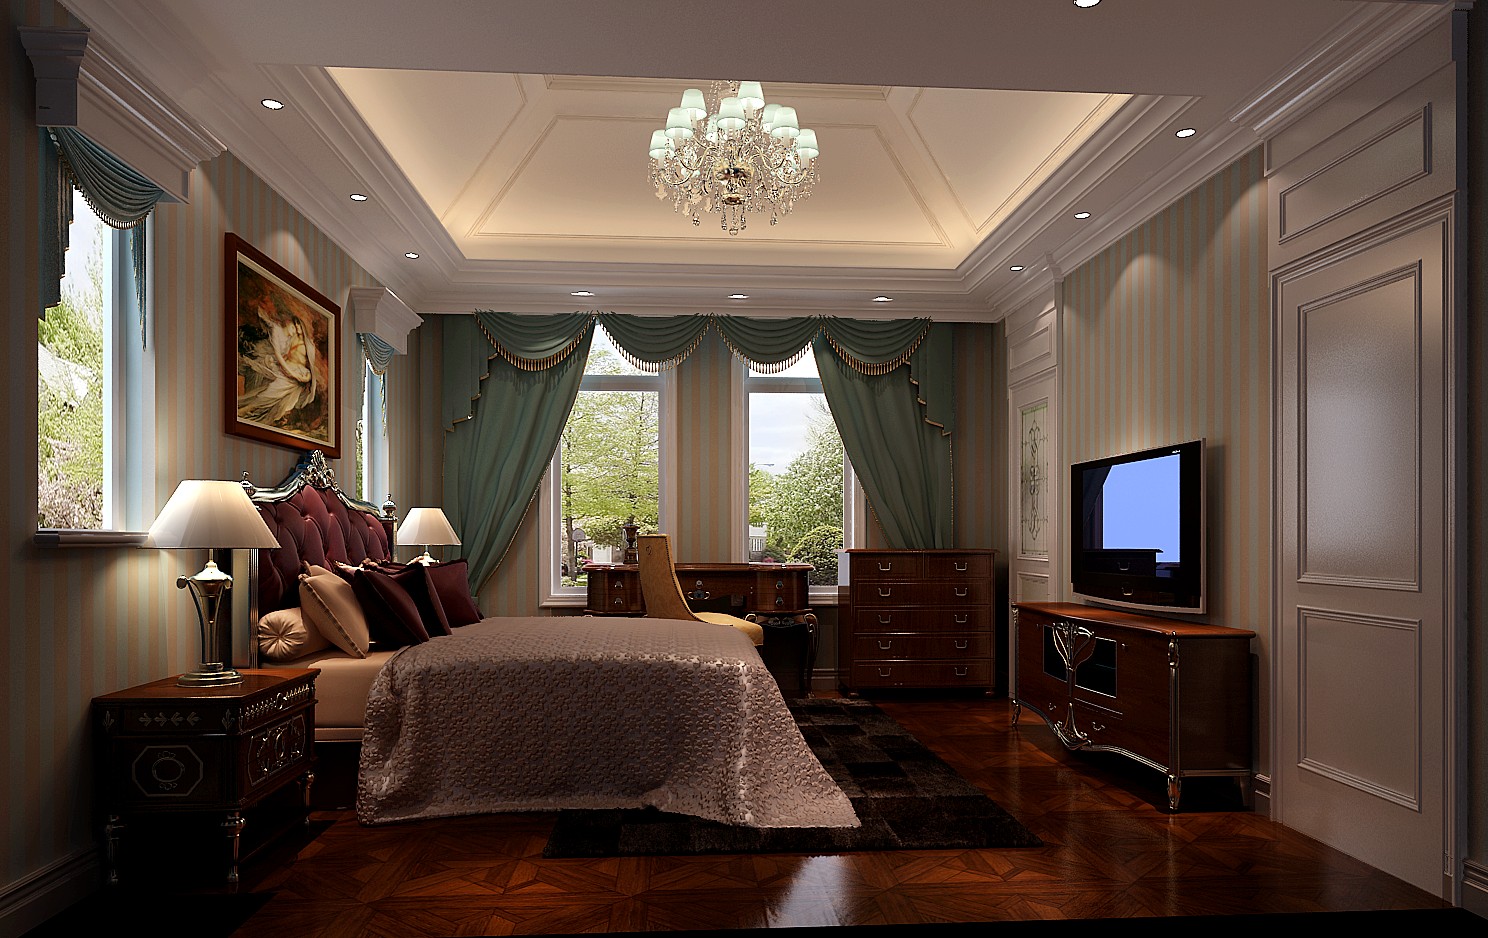 简约 欧式 高度国际 华丽 色彩 舒适 卧室 卧室图片来自zy_xzb在中海尚湖世家的分享